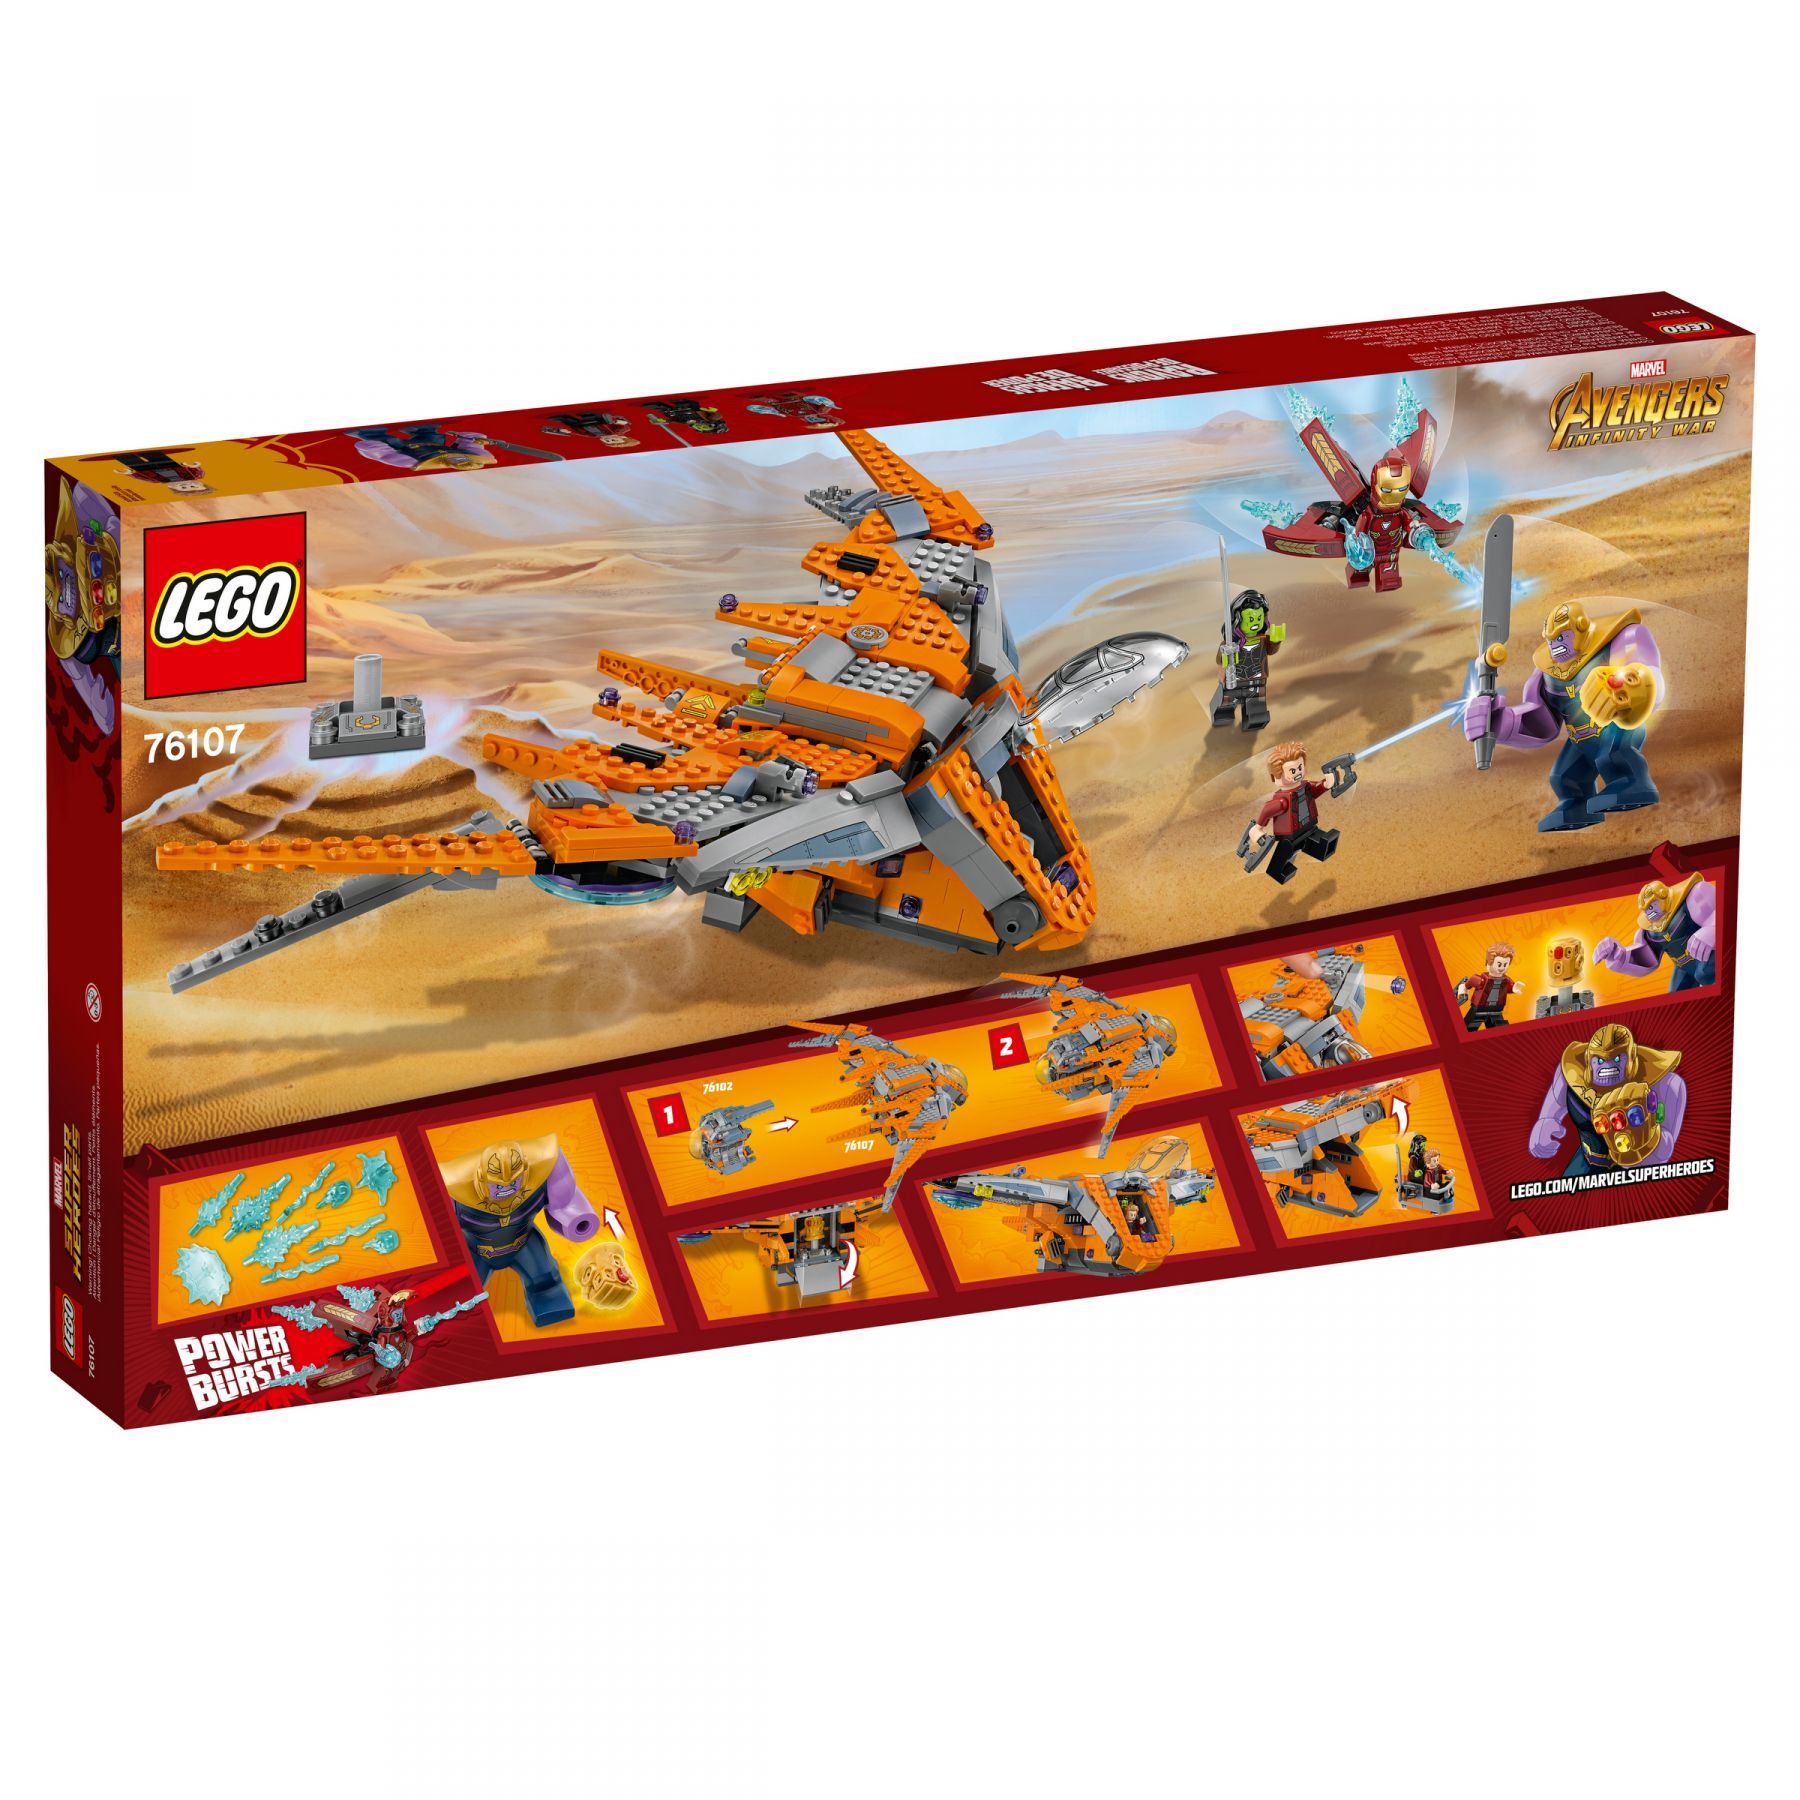 LEGO 76107 Thanos Das Bausatz Gefecht ultimative